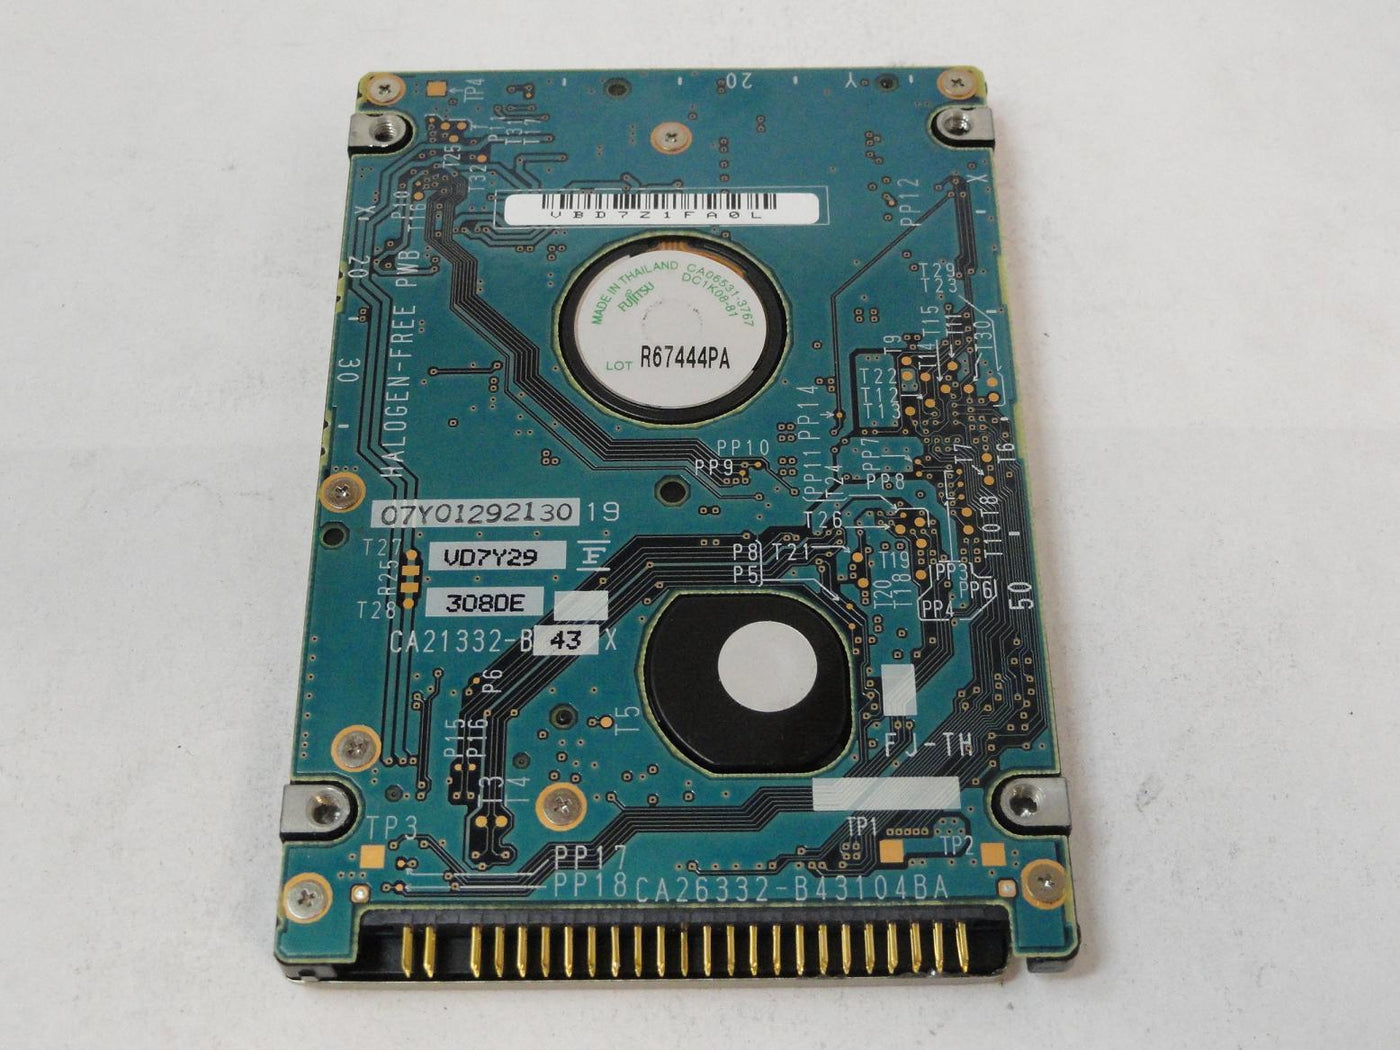 MC4297_CA06377-B11400DL_Fujitsu 40GB IDE 5400rpm 2.5in HDD - Image2